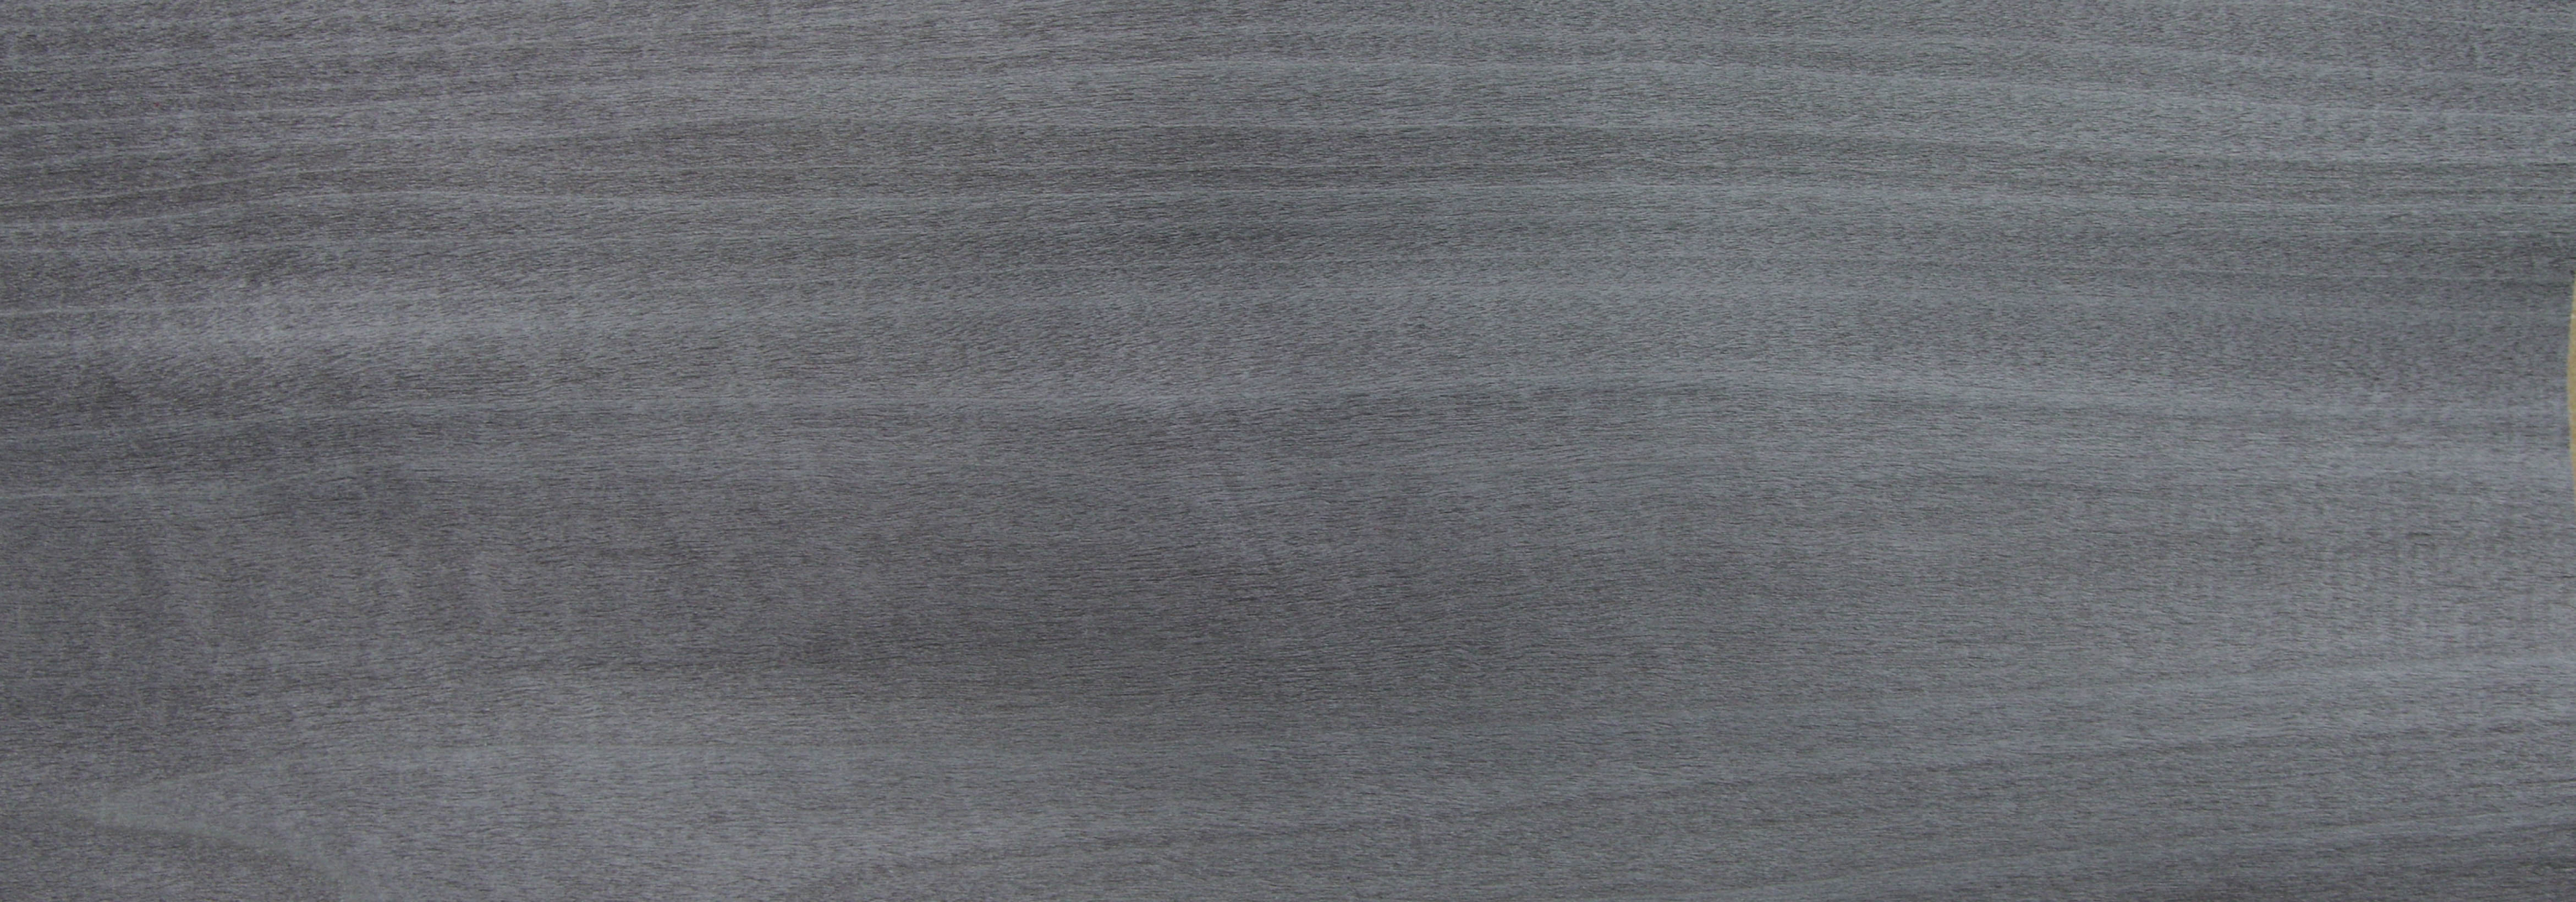 0,6mm Tulpenbaum silbergrau gefärbtes Furnier 0,51m² A 13 33 12